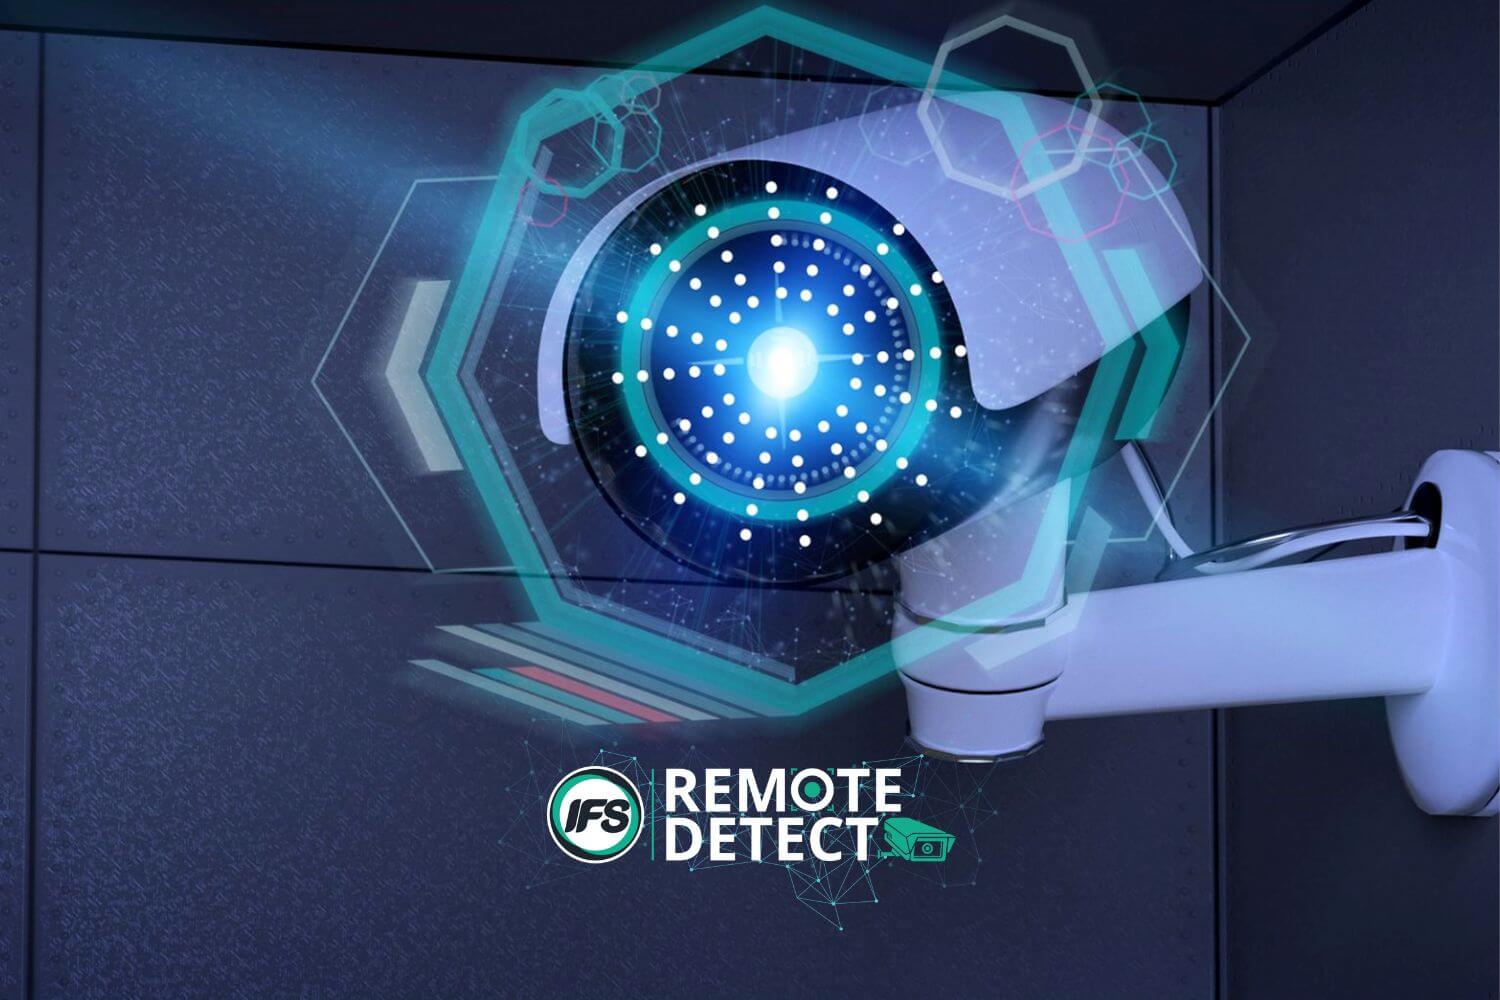 Remote Detect Service